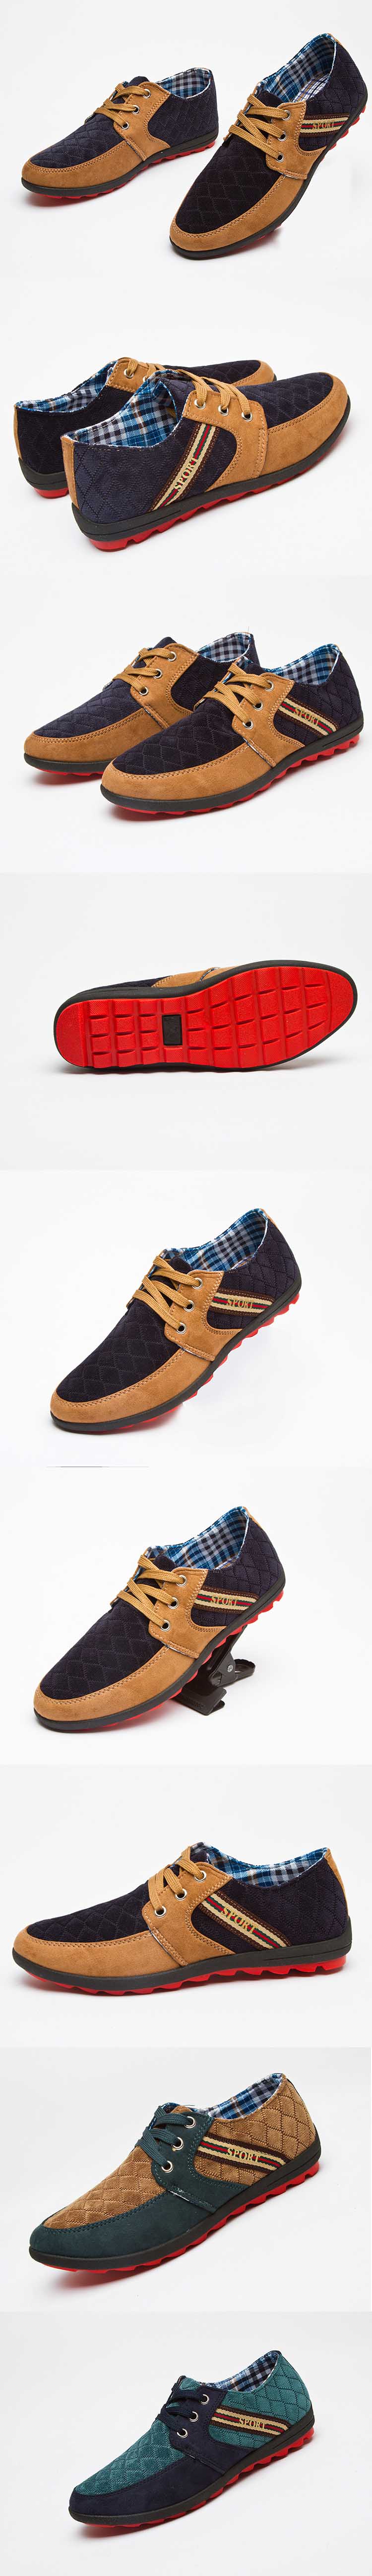 jual sepatu sneaker pria casual model terbaru , terbuat dari bahan bludru yang nyaman dipakai dan tahan lama, temukan koleksi sepatu sneaker casual pria lain nya hanya disini